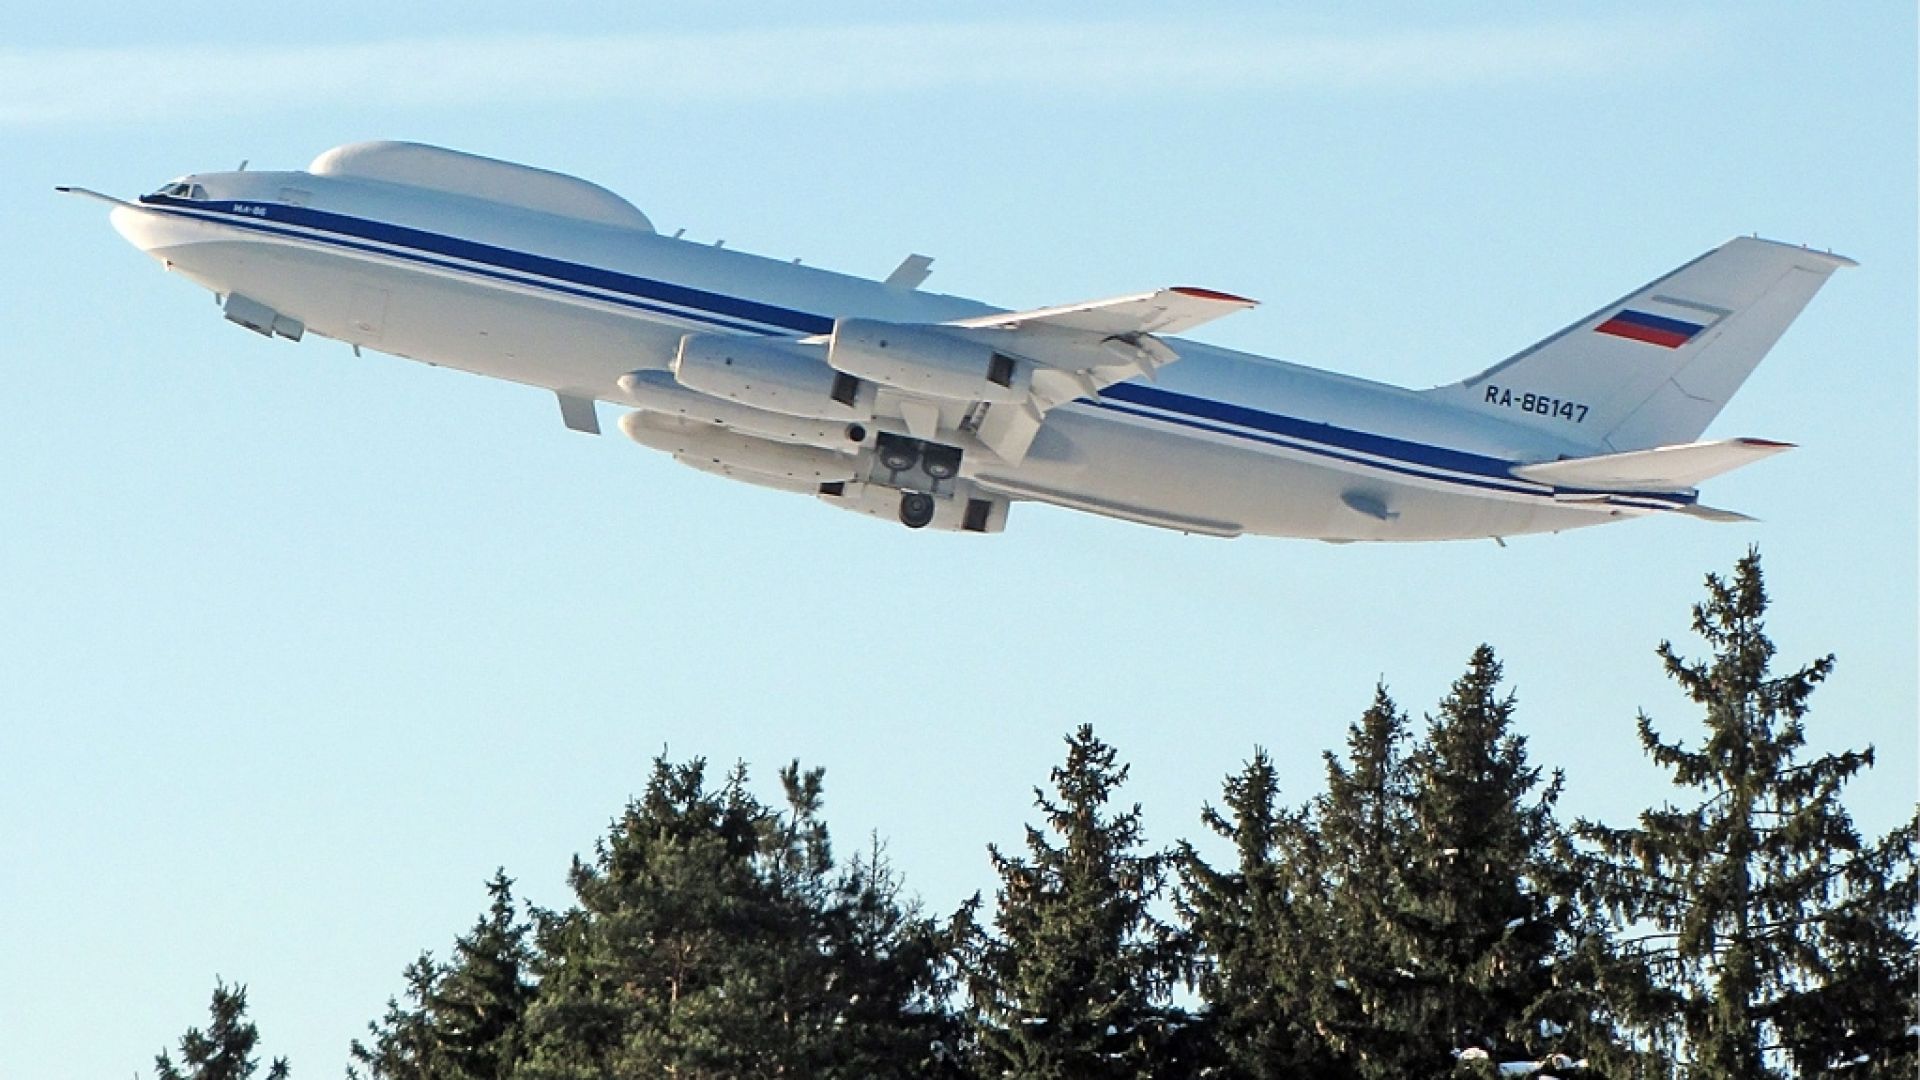 Обраха самолета, предвиден за руски команден пост при ядрен конфликт